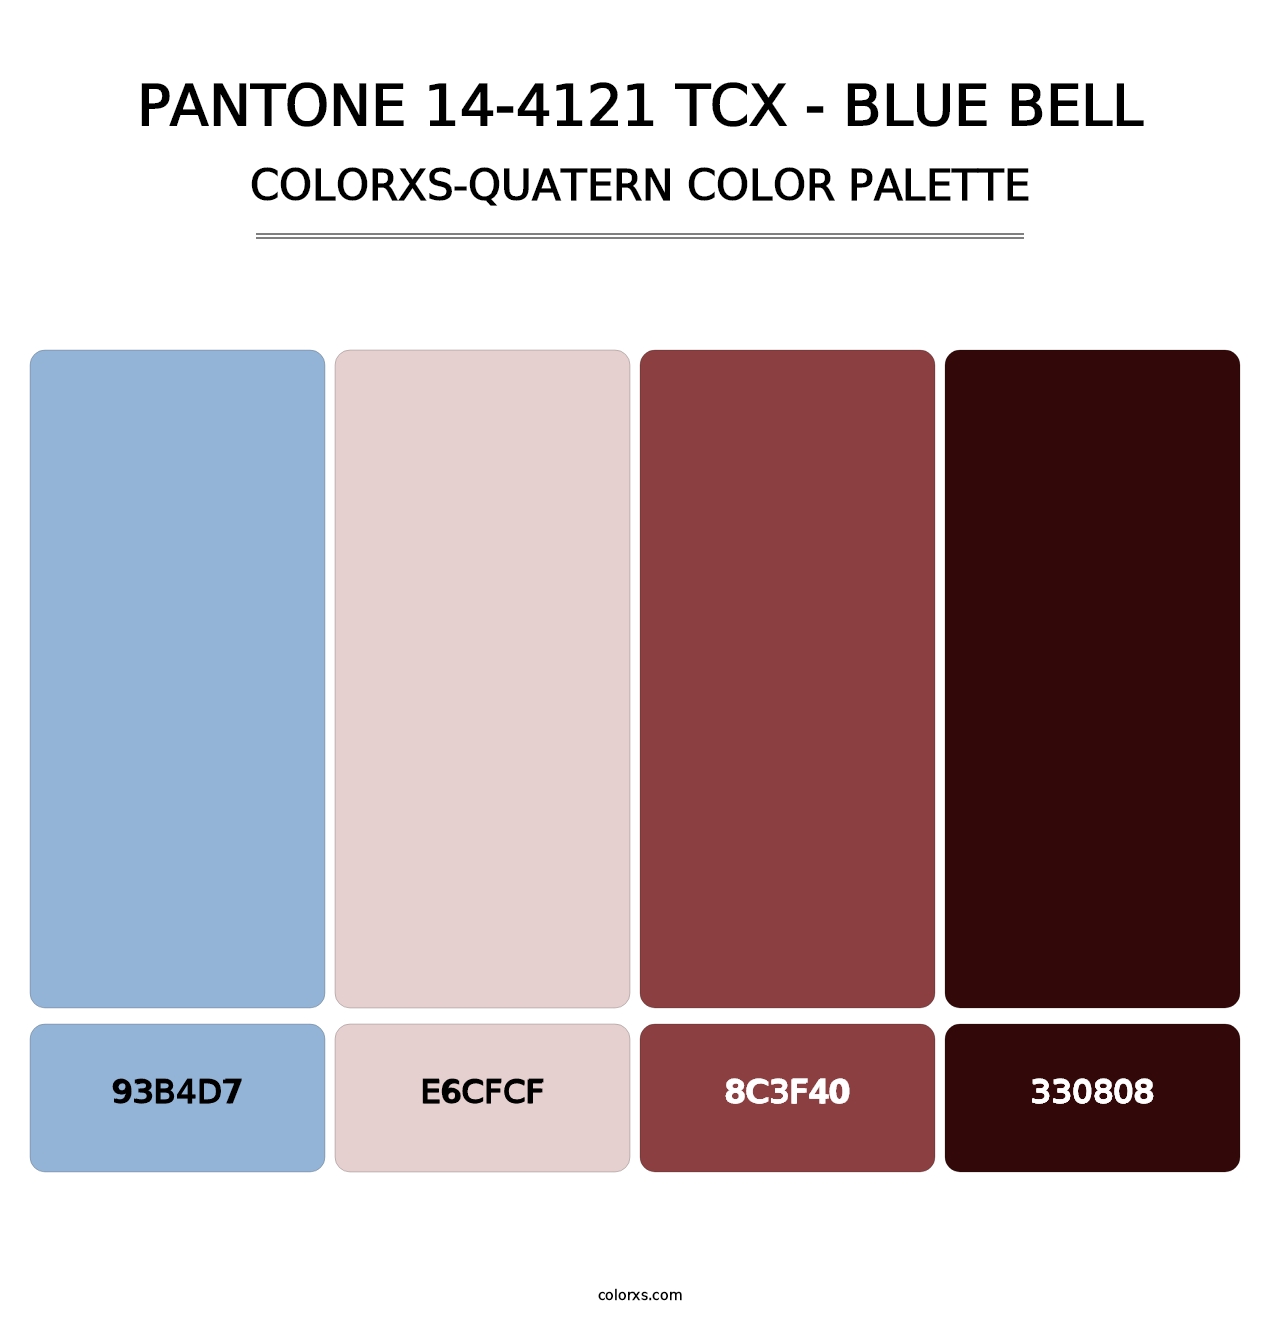 PANTONE 14-4121 TCX - Blue Bell - Colorxs Quatern Palette